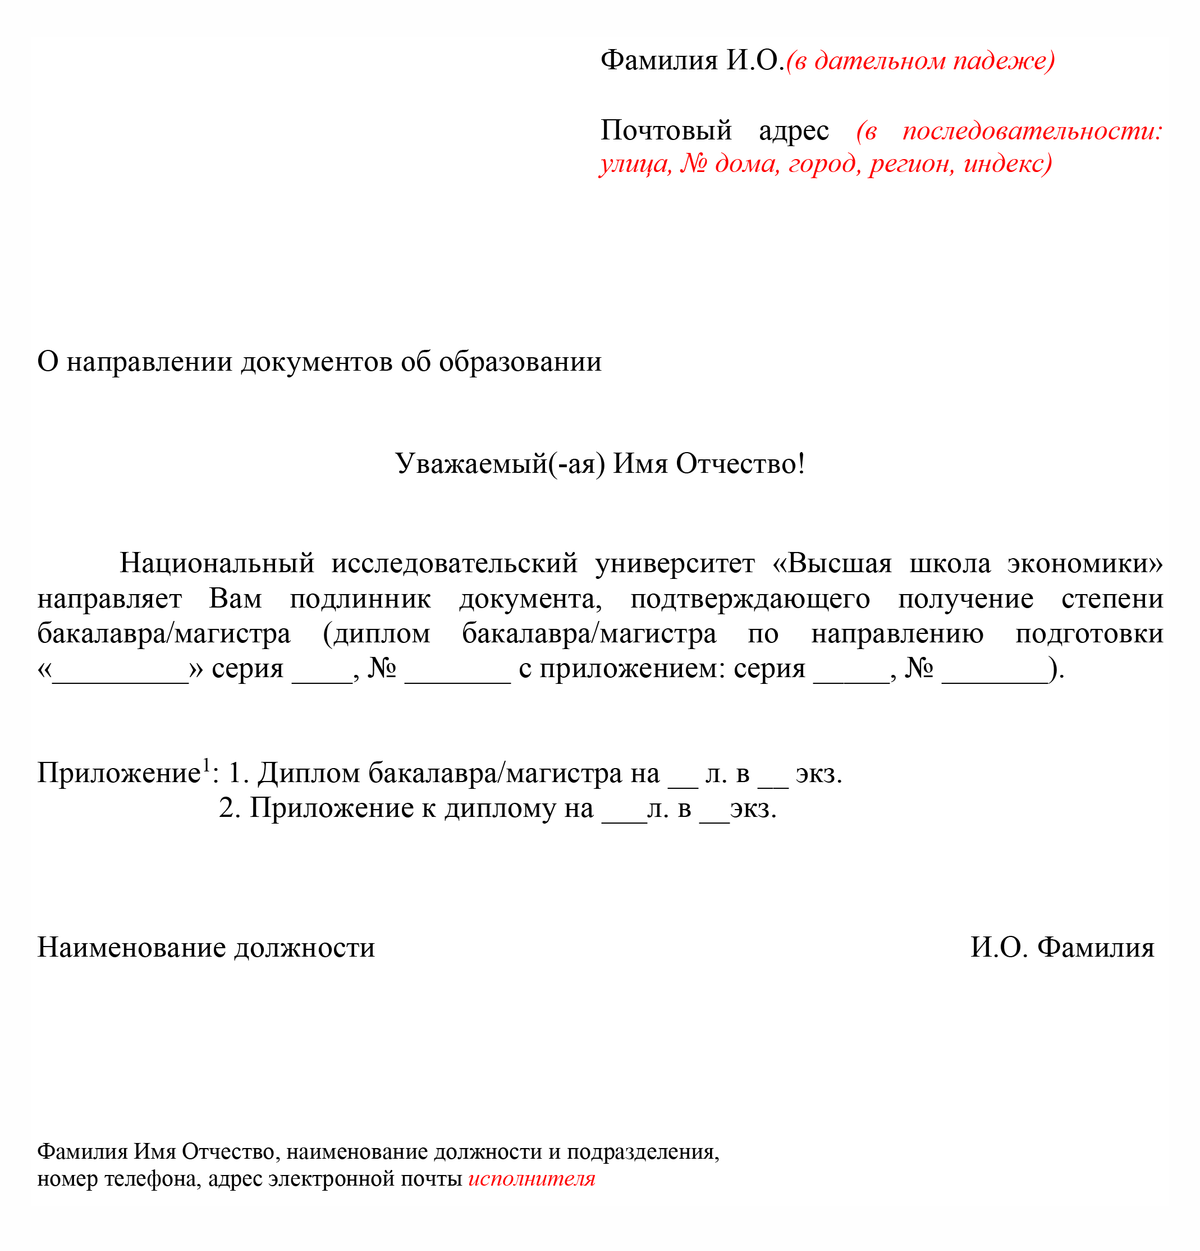 Шаблон сопроводительного письма к диплому выпускнику НИУ ВШЭ. Источник: hse.ru